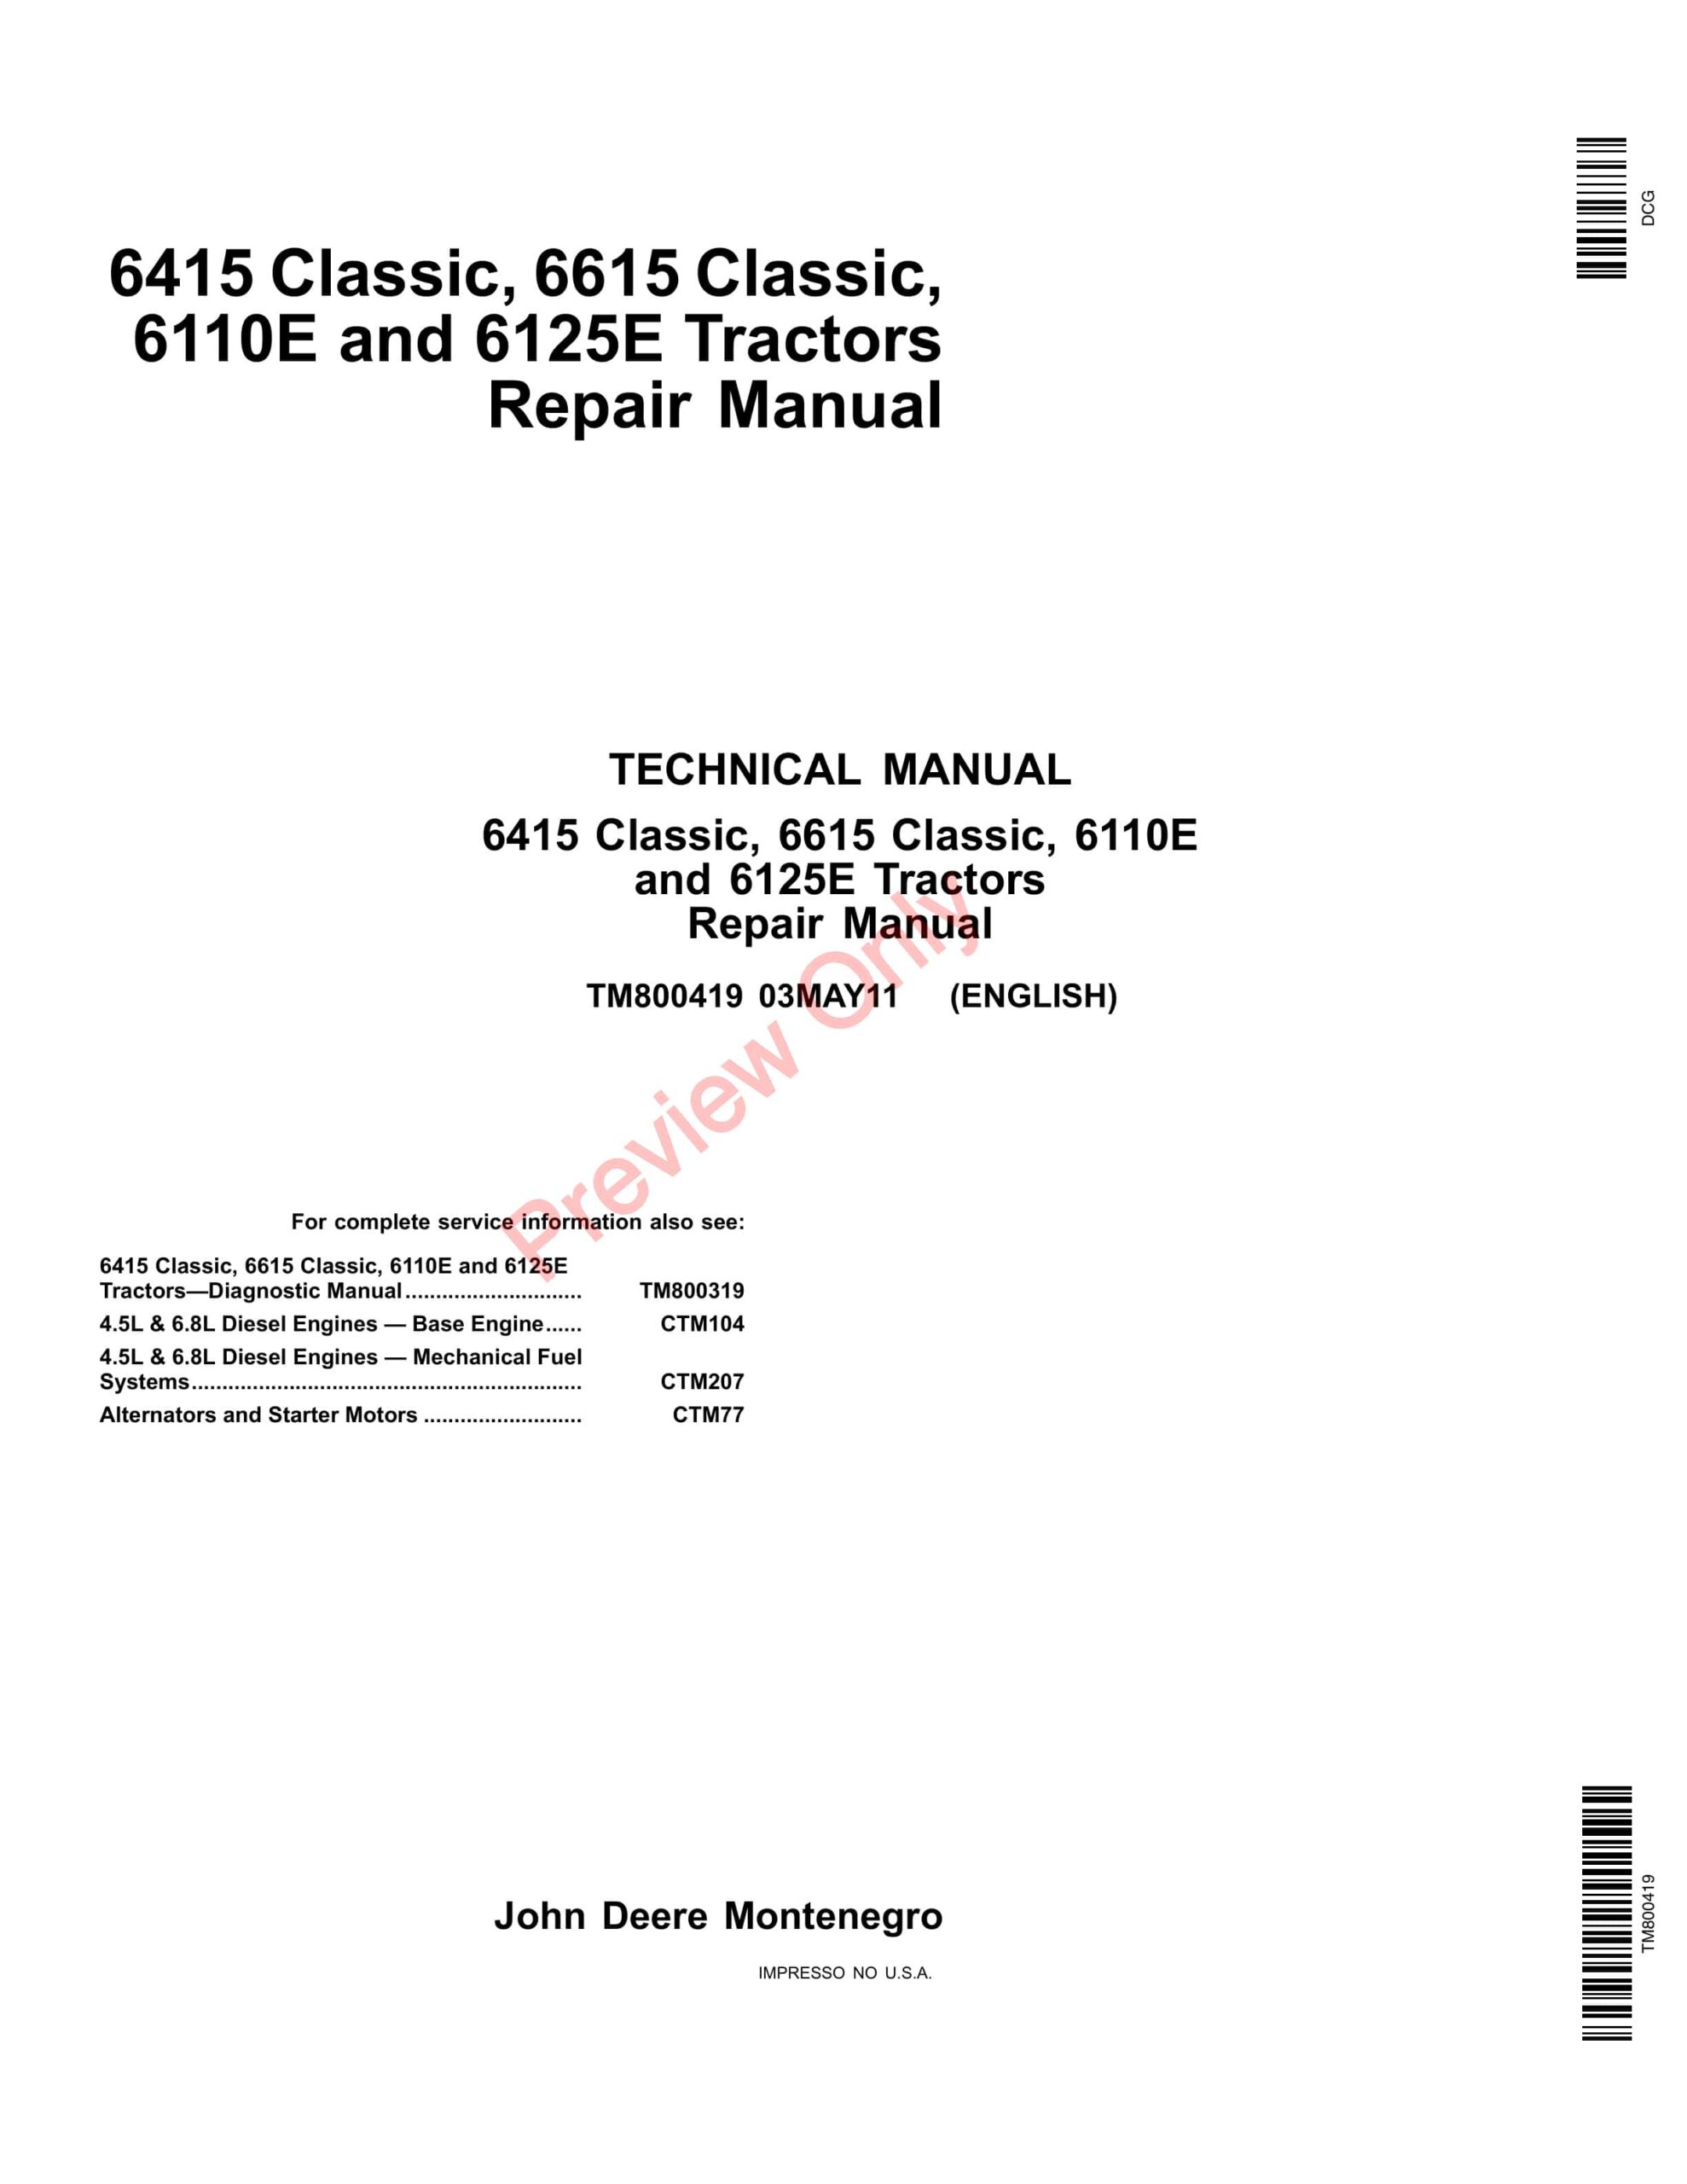 John Deere 6415 Classic, 6615 Classic, 6110E and 6125E Tractors Service Information TM800419 25NOV13-1